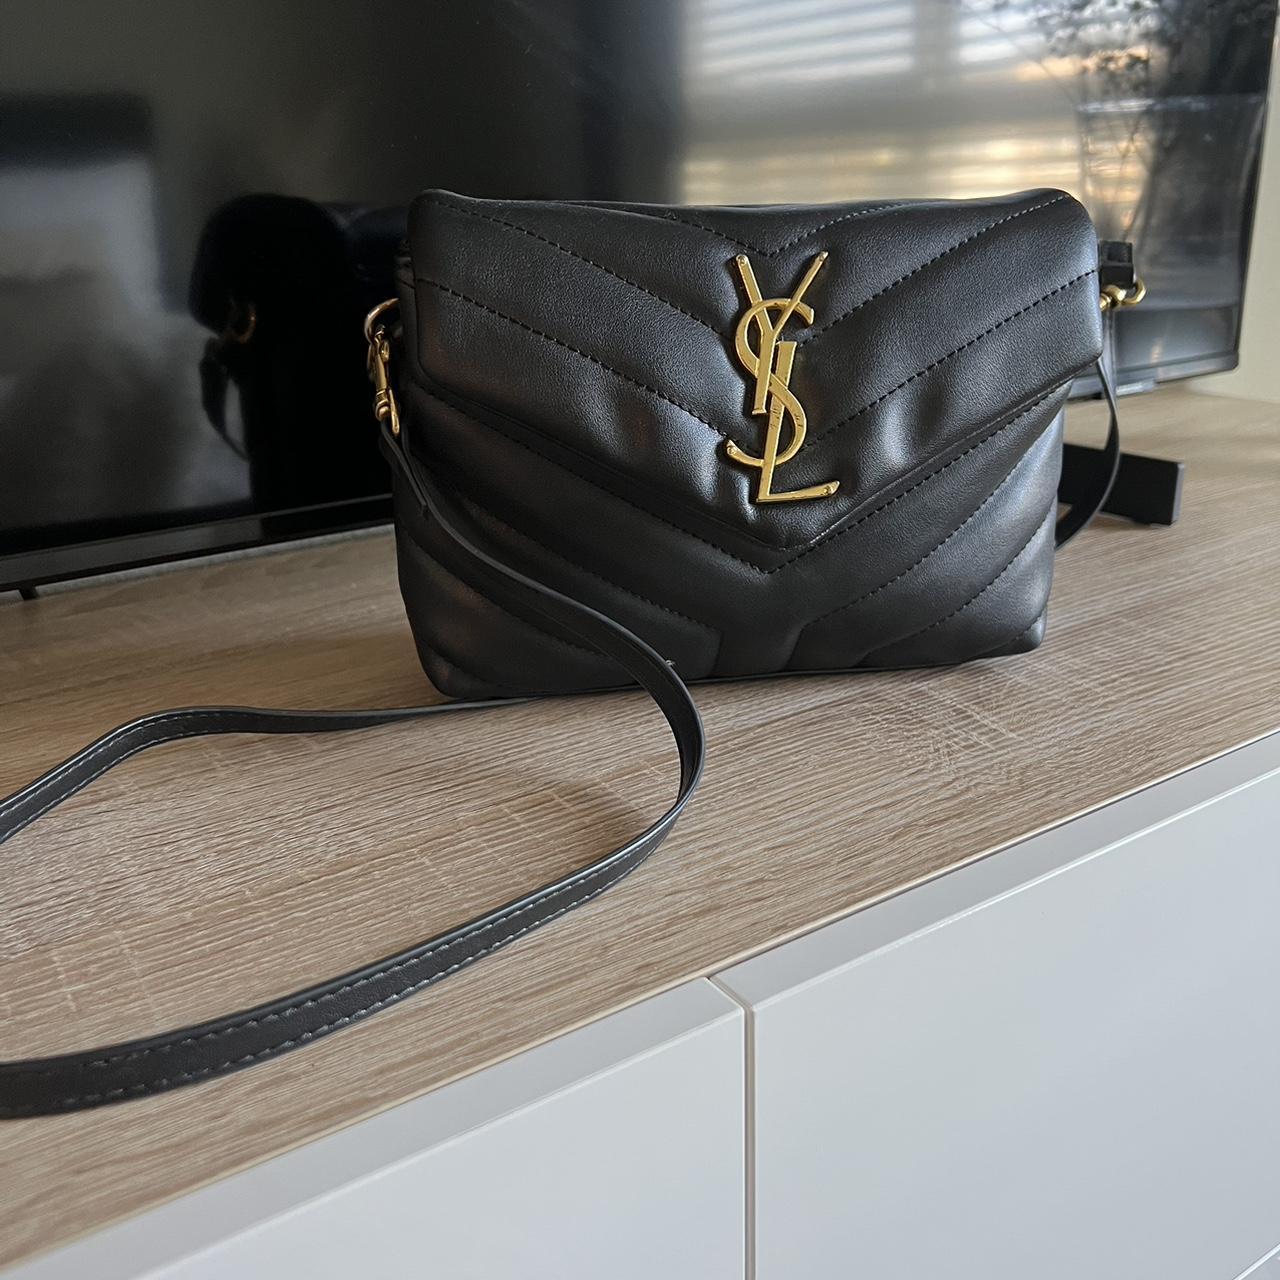 Yves Saint Laurent, Bags, Ysl Black Camera Bag